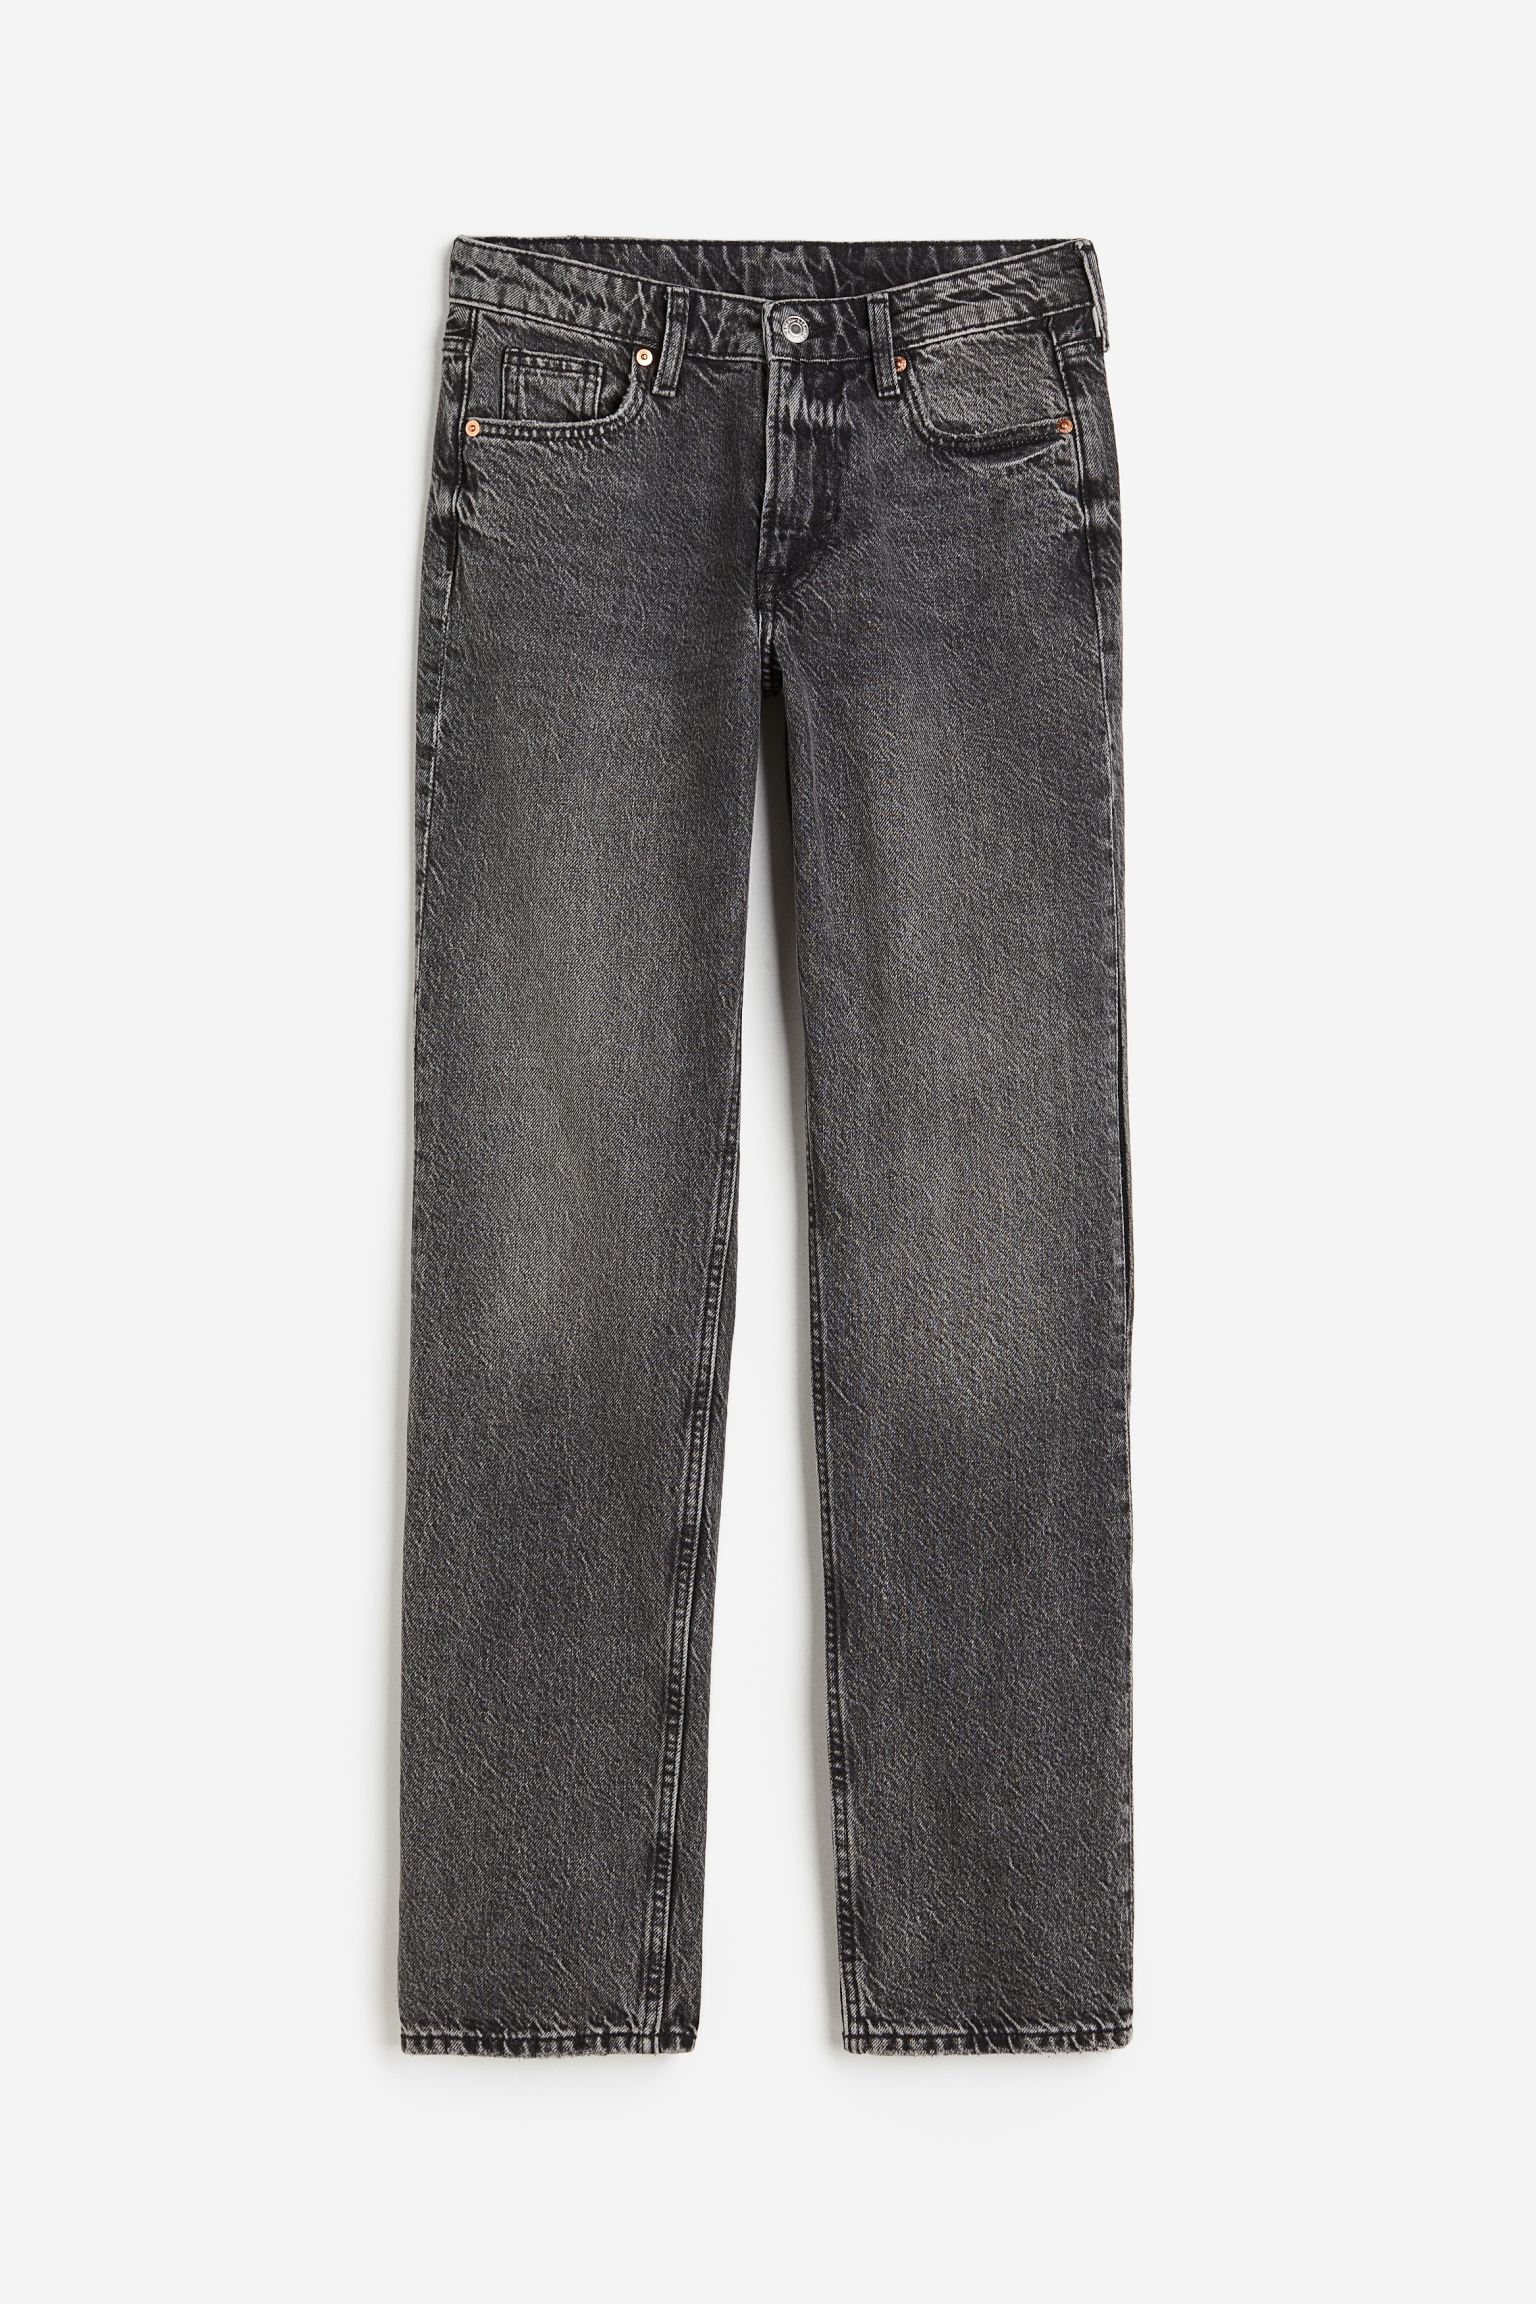  Τα 5 must-have γκρι jeans για να προσθέσεις στην χειμερινή γκαρνταρόμπα σου